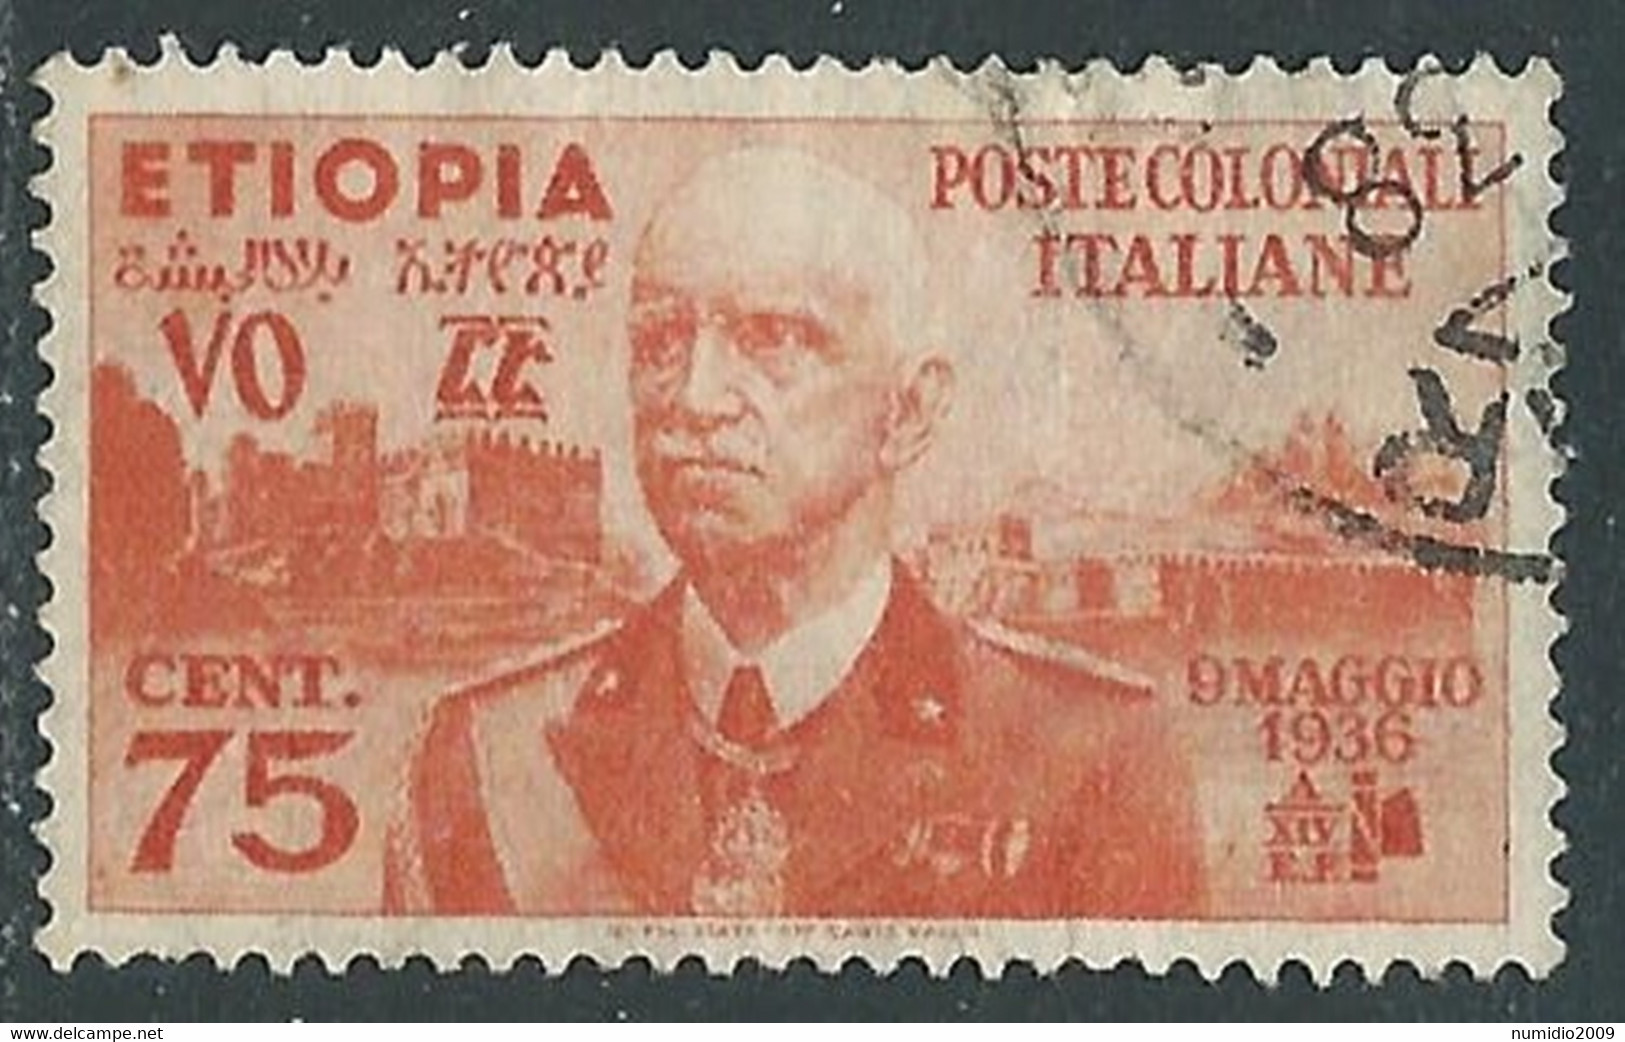 1936 ETIOPIA USATO EFFIGIE 75 CENT - RF25-5 - Ethiopia